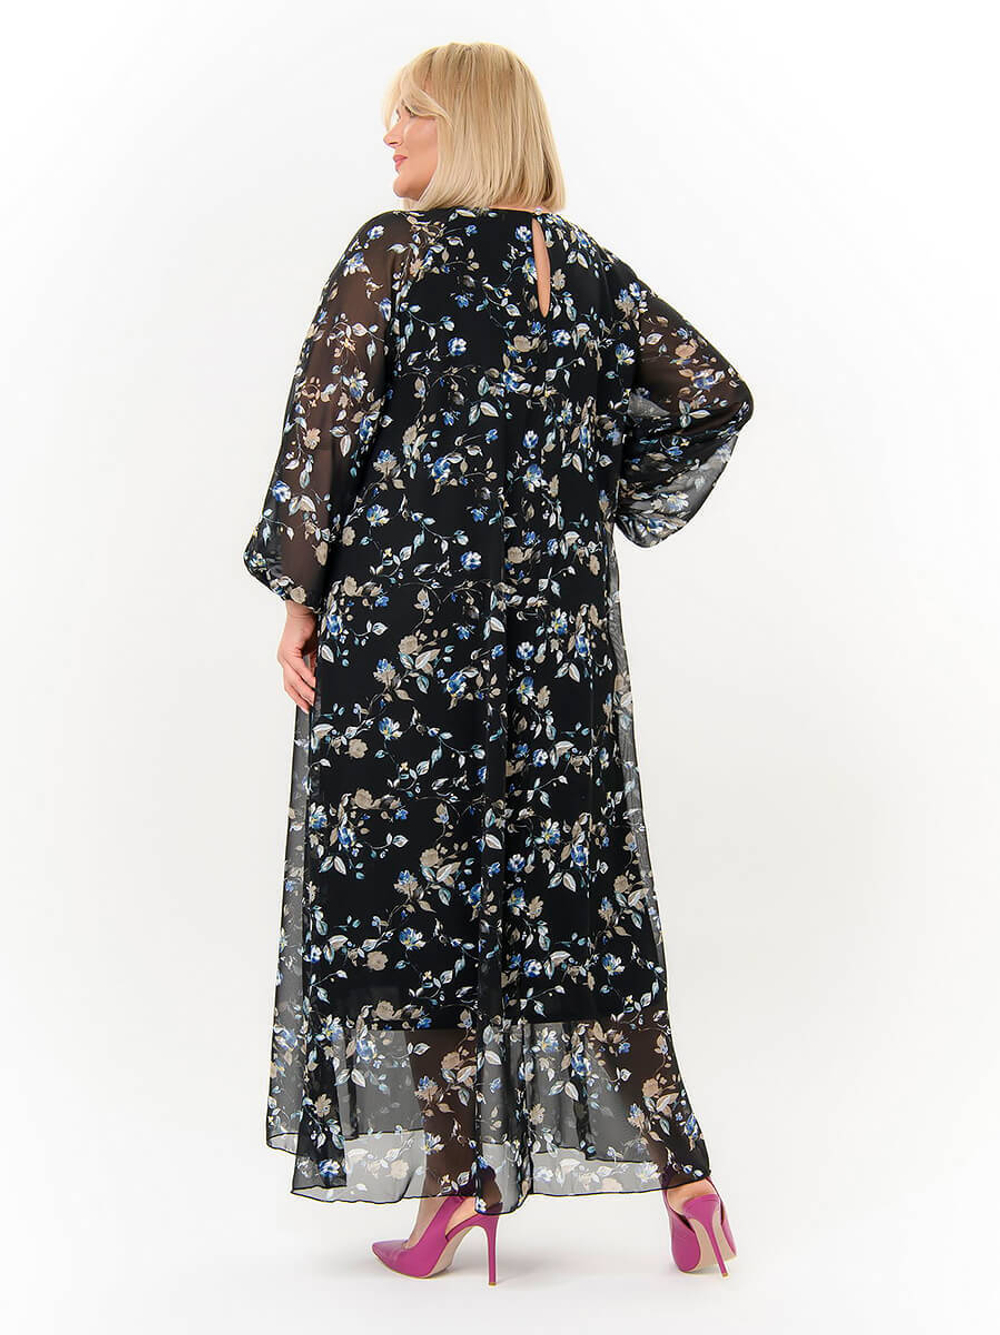 Шифоновое платье Бетти, бирюзовые цветы